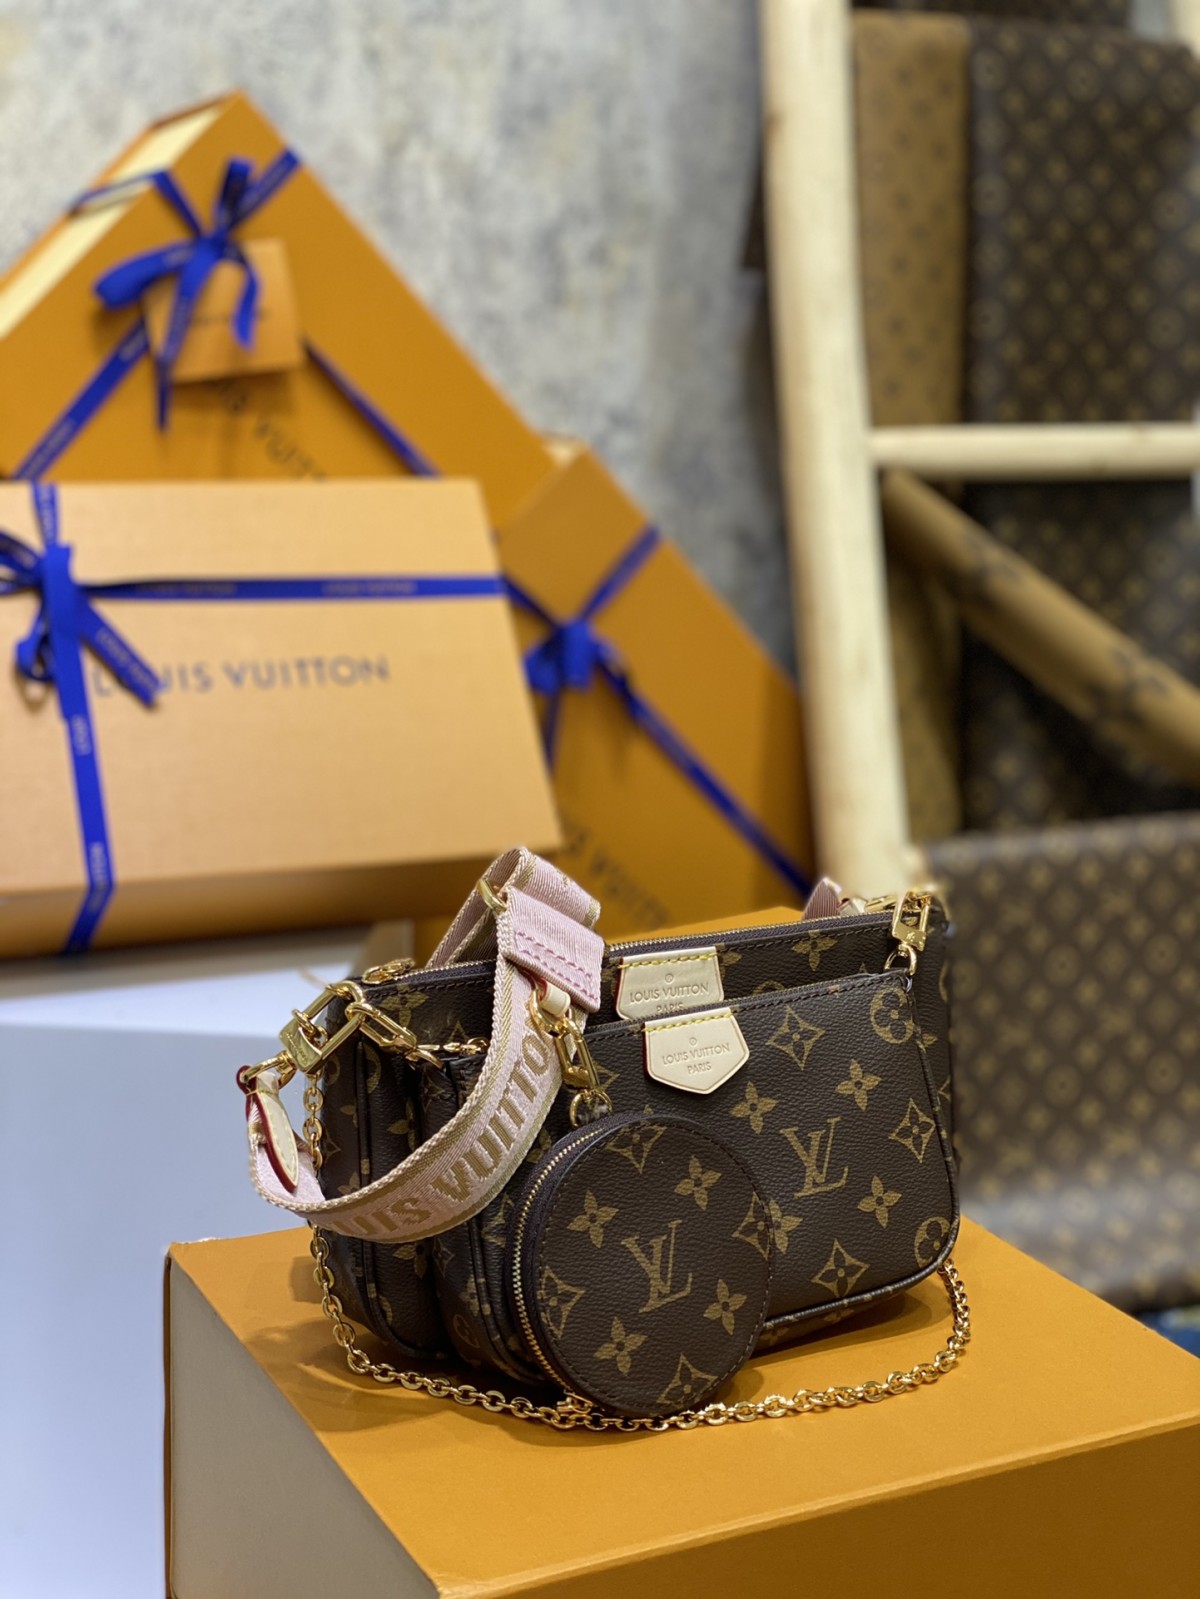 Як я можу купити репліку ремінця сумки Louis Vuitton онлайн？ (останнє 2022 року) - Інтернет-магазин підробленої сумки Louis Vuitton найкращої якості, копія дизайнерської сумки ru